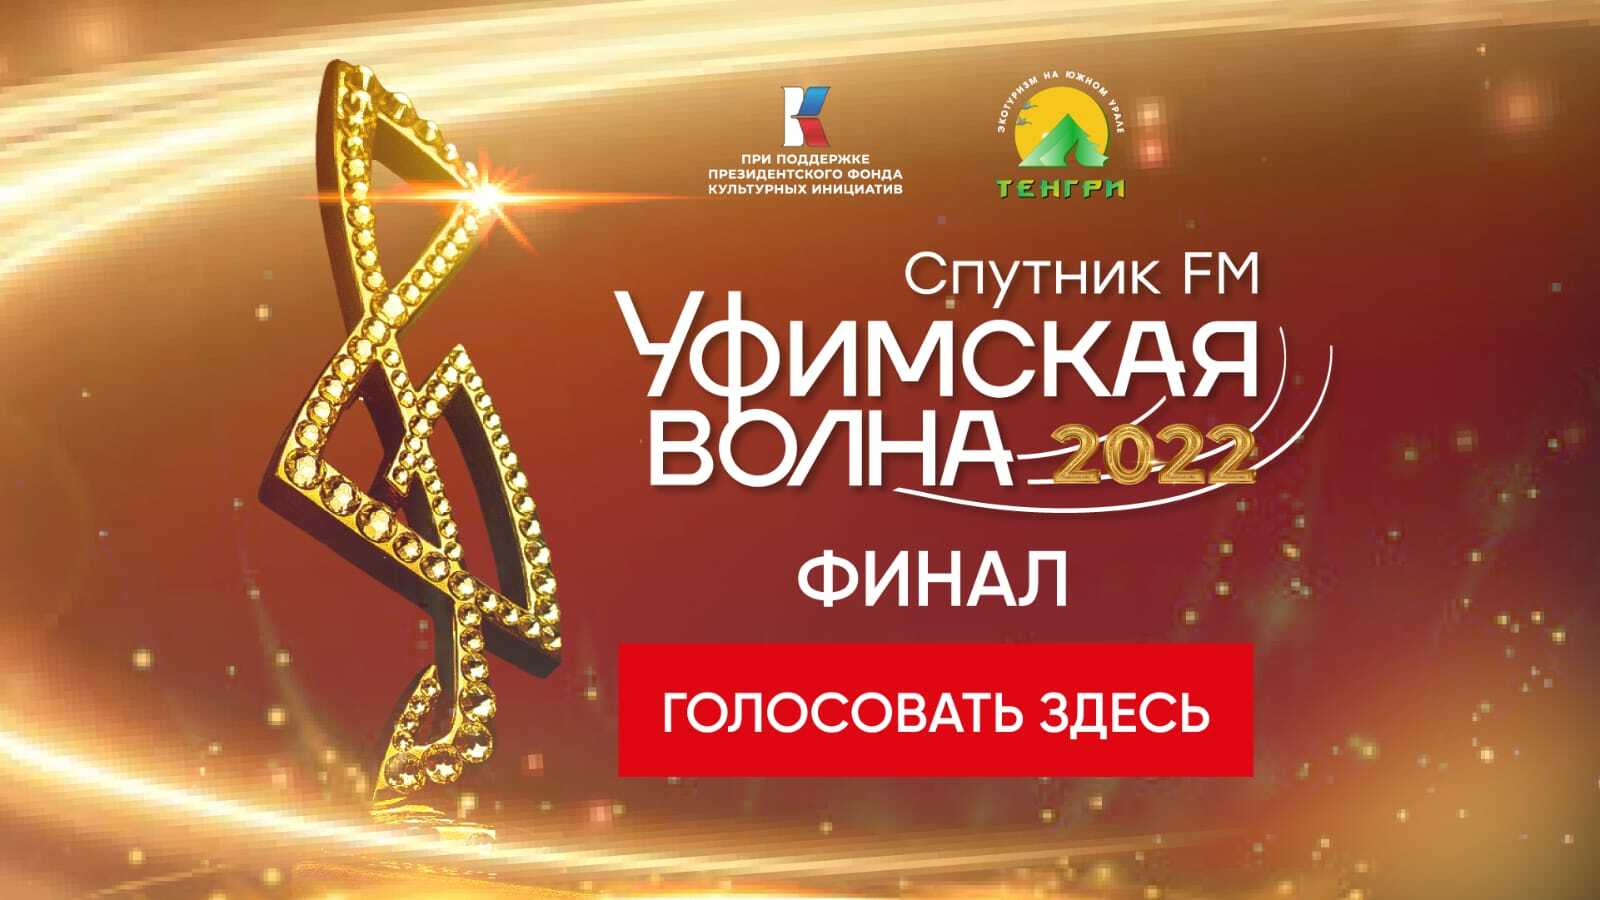 Идет финальное голосование музыкального конкурса «Уфимская Волна 2022»